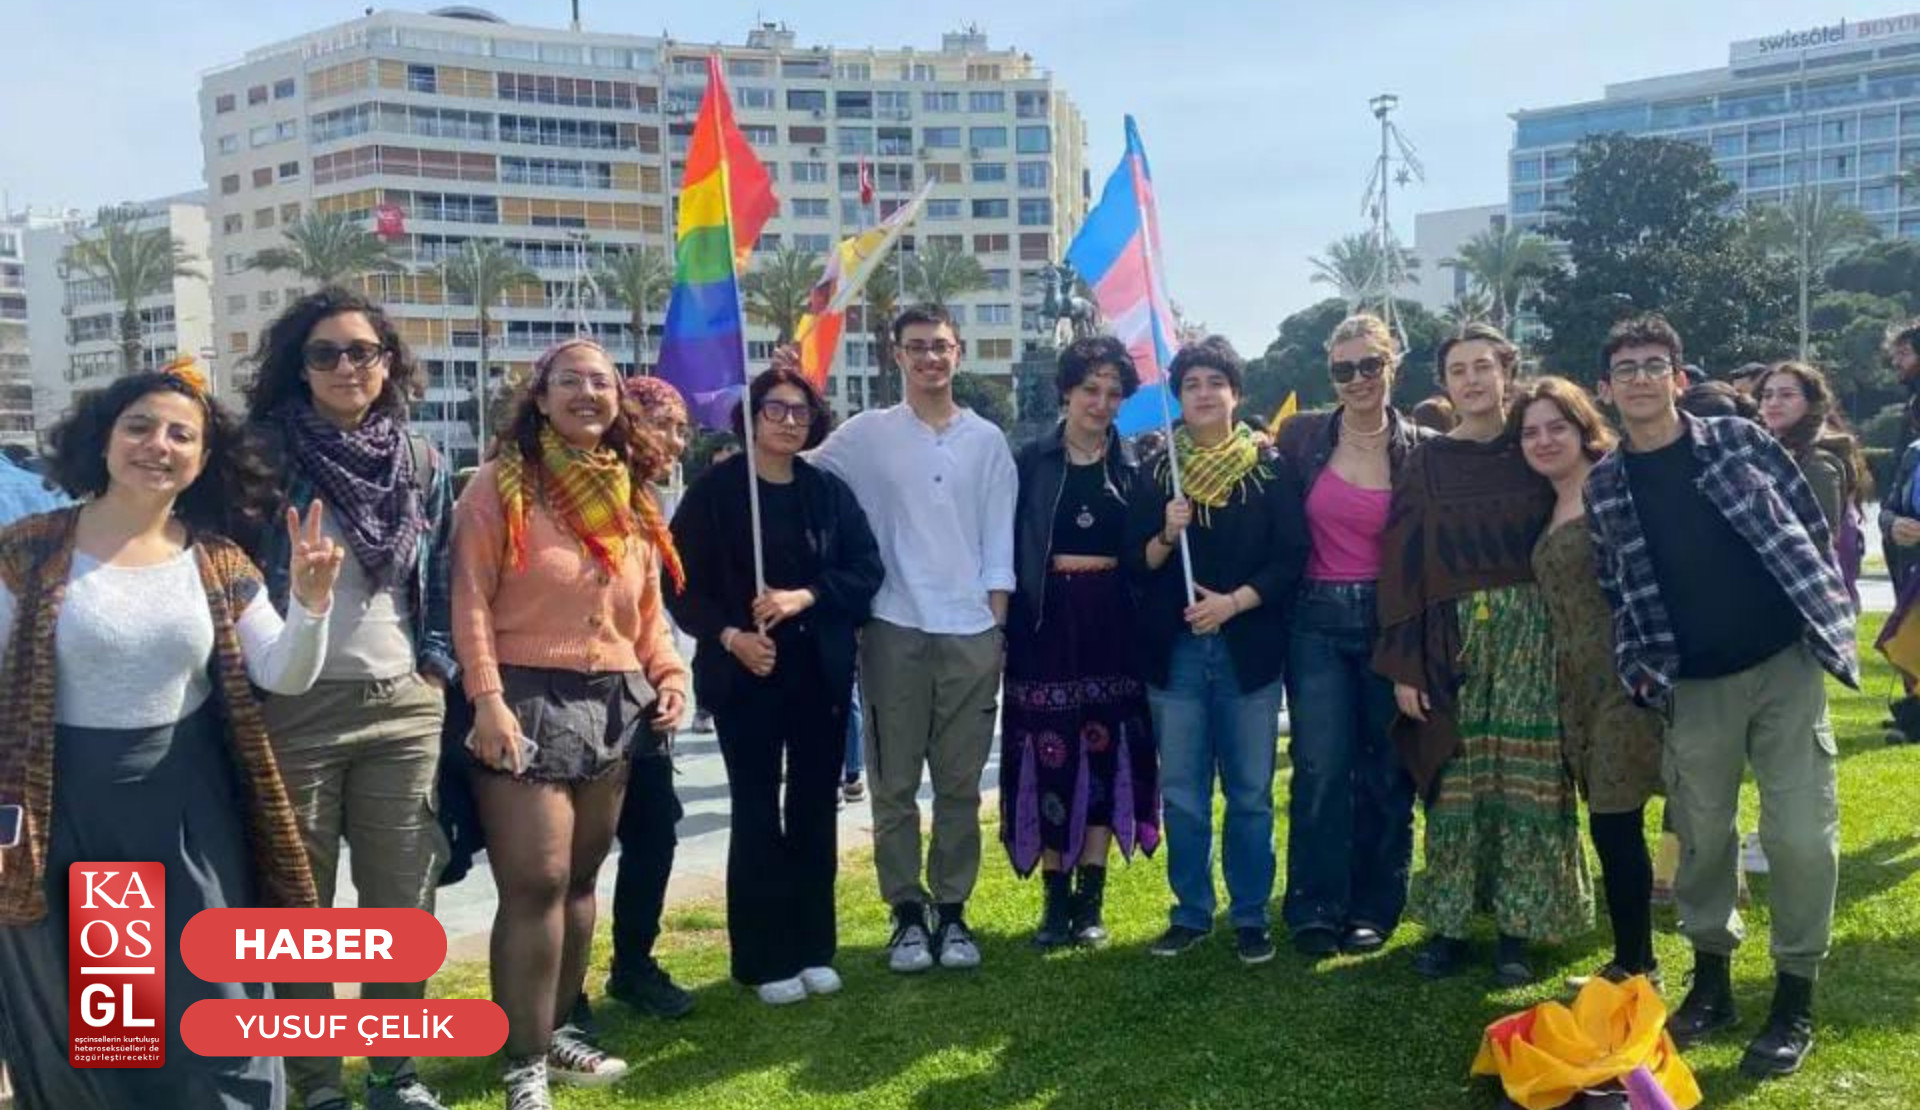 İzmir Newrozu'nda saldırıya uğrayan Direnişin Renkleri üyeleri: “Sekiz kere saldırıya uğradık” Kaos GL - LGBTİ+ Haber Portalı